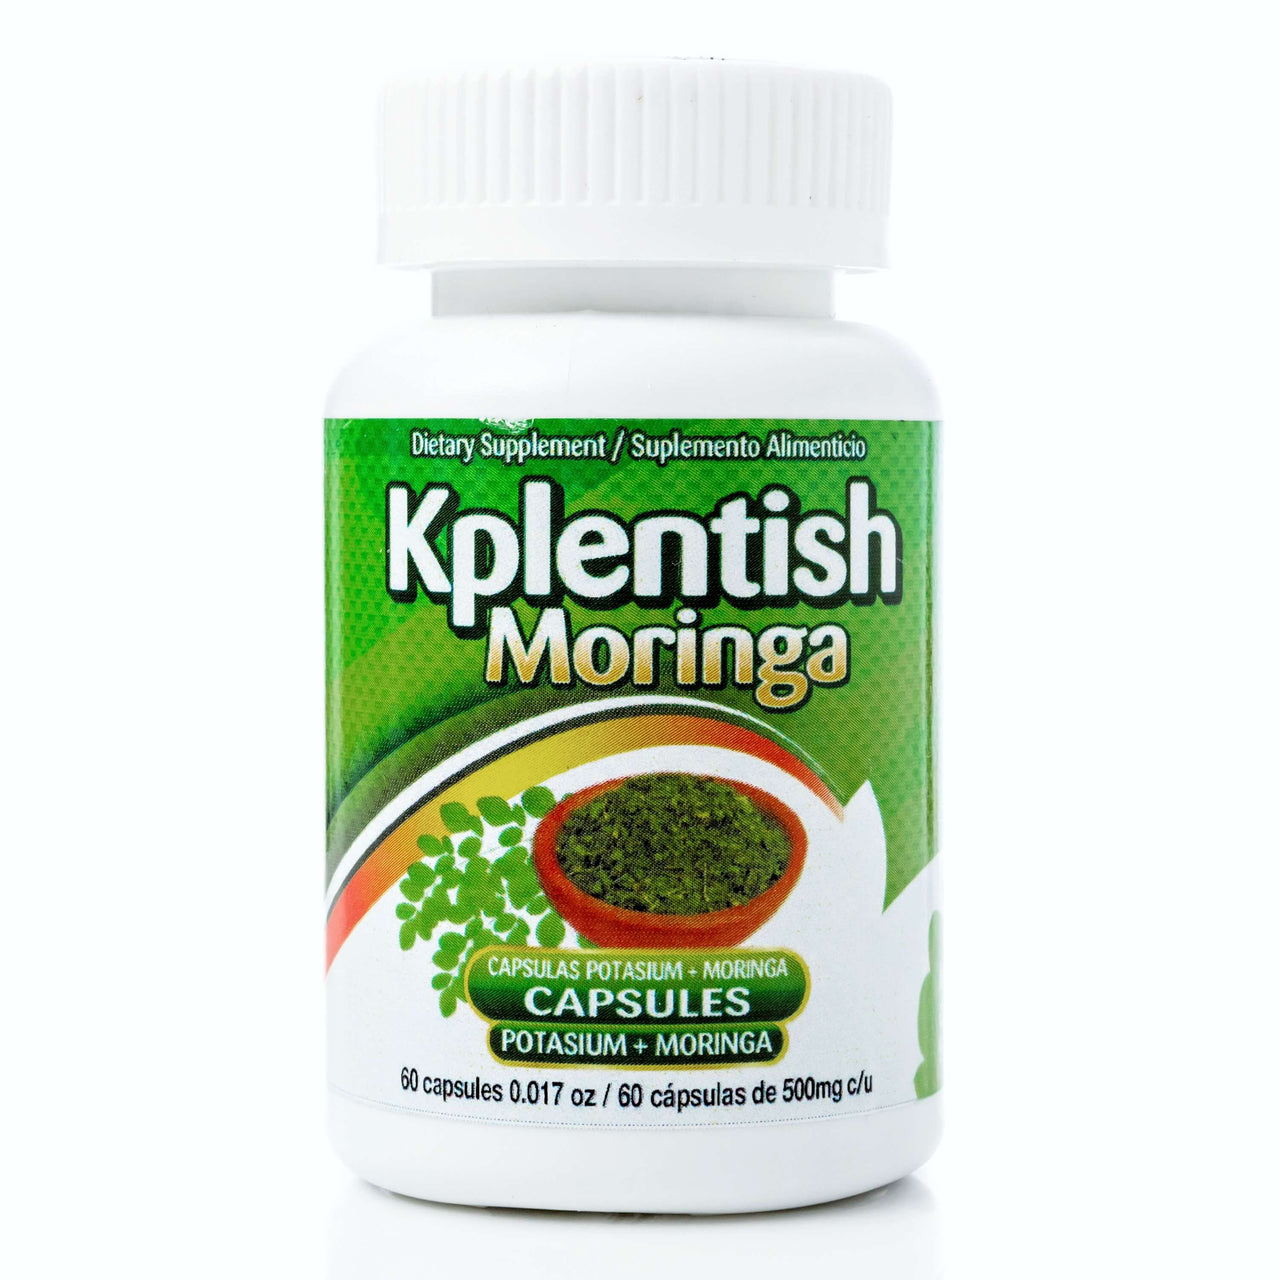 KPlentish Moringa and Potassium Supplement - 60 Ct